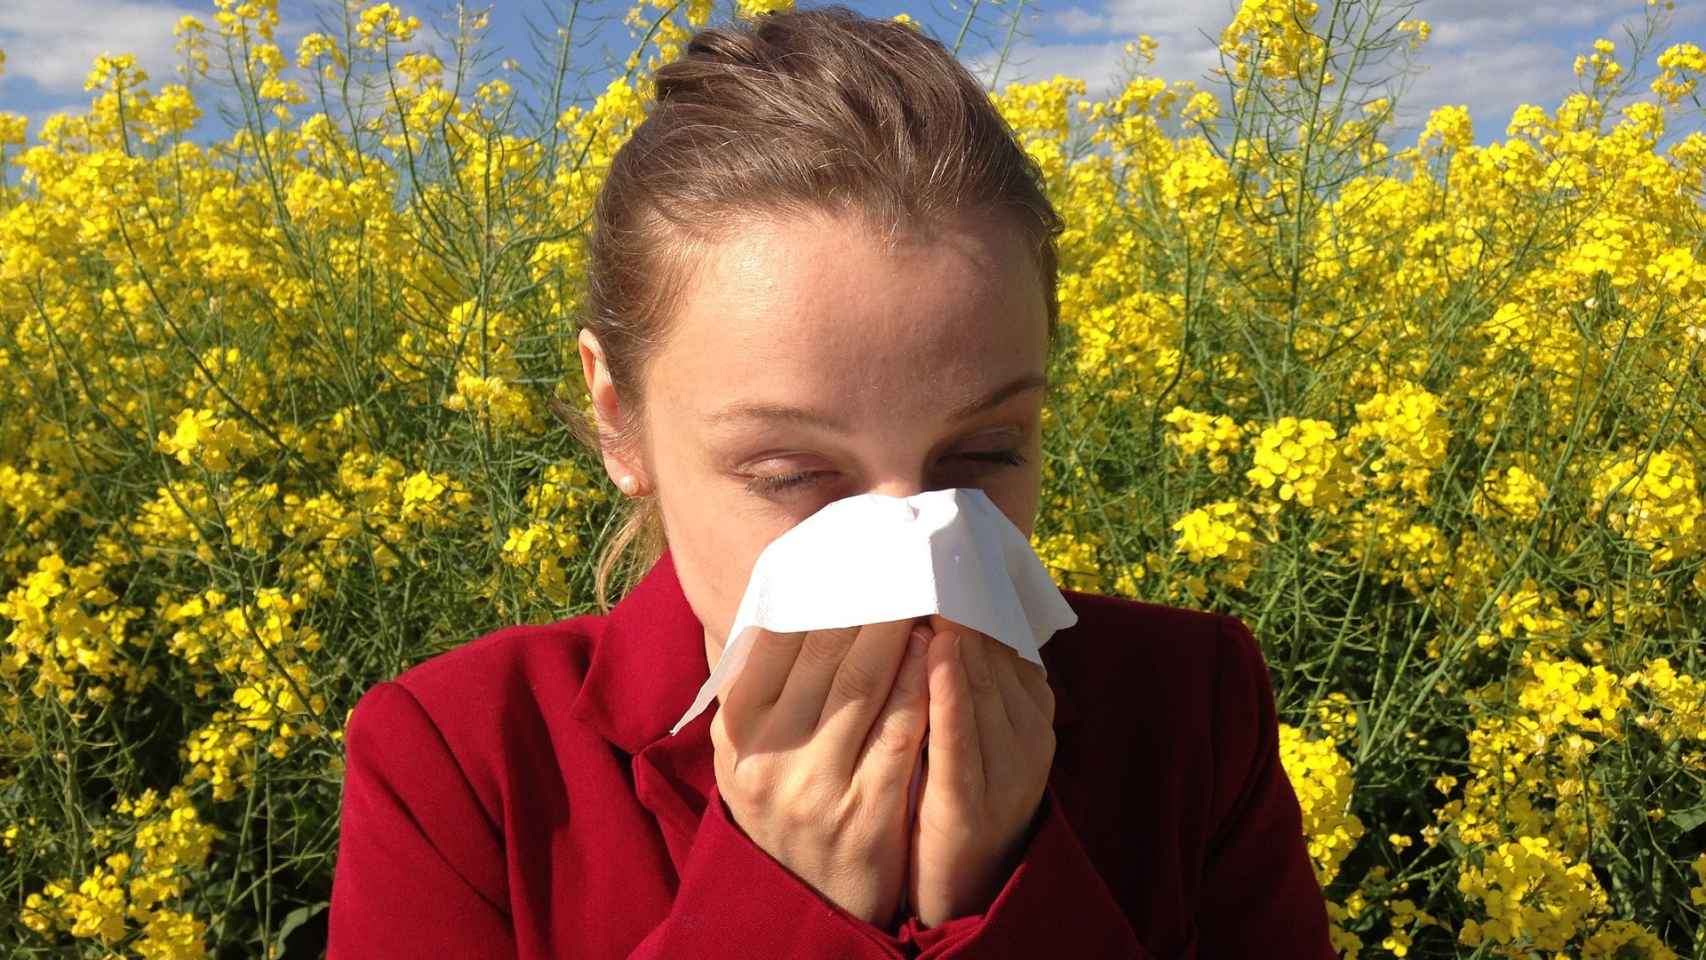 Alergia primaveral: síntomas y tratamientos